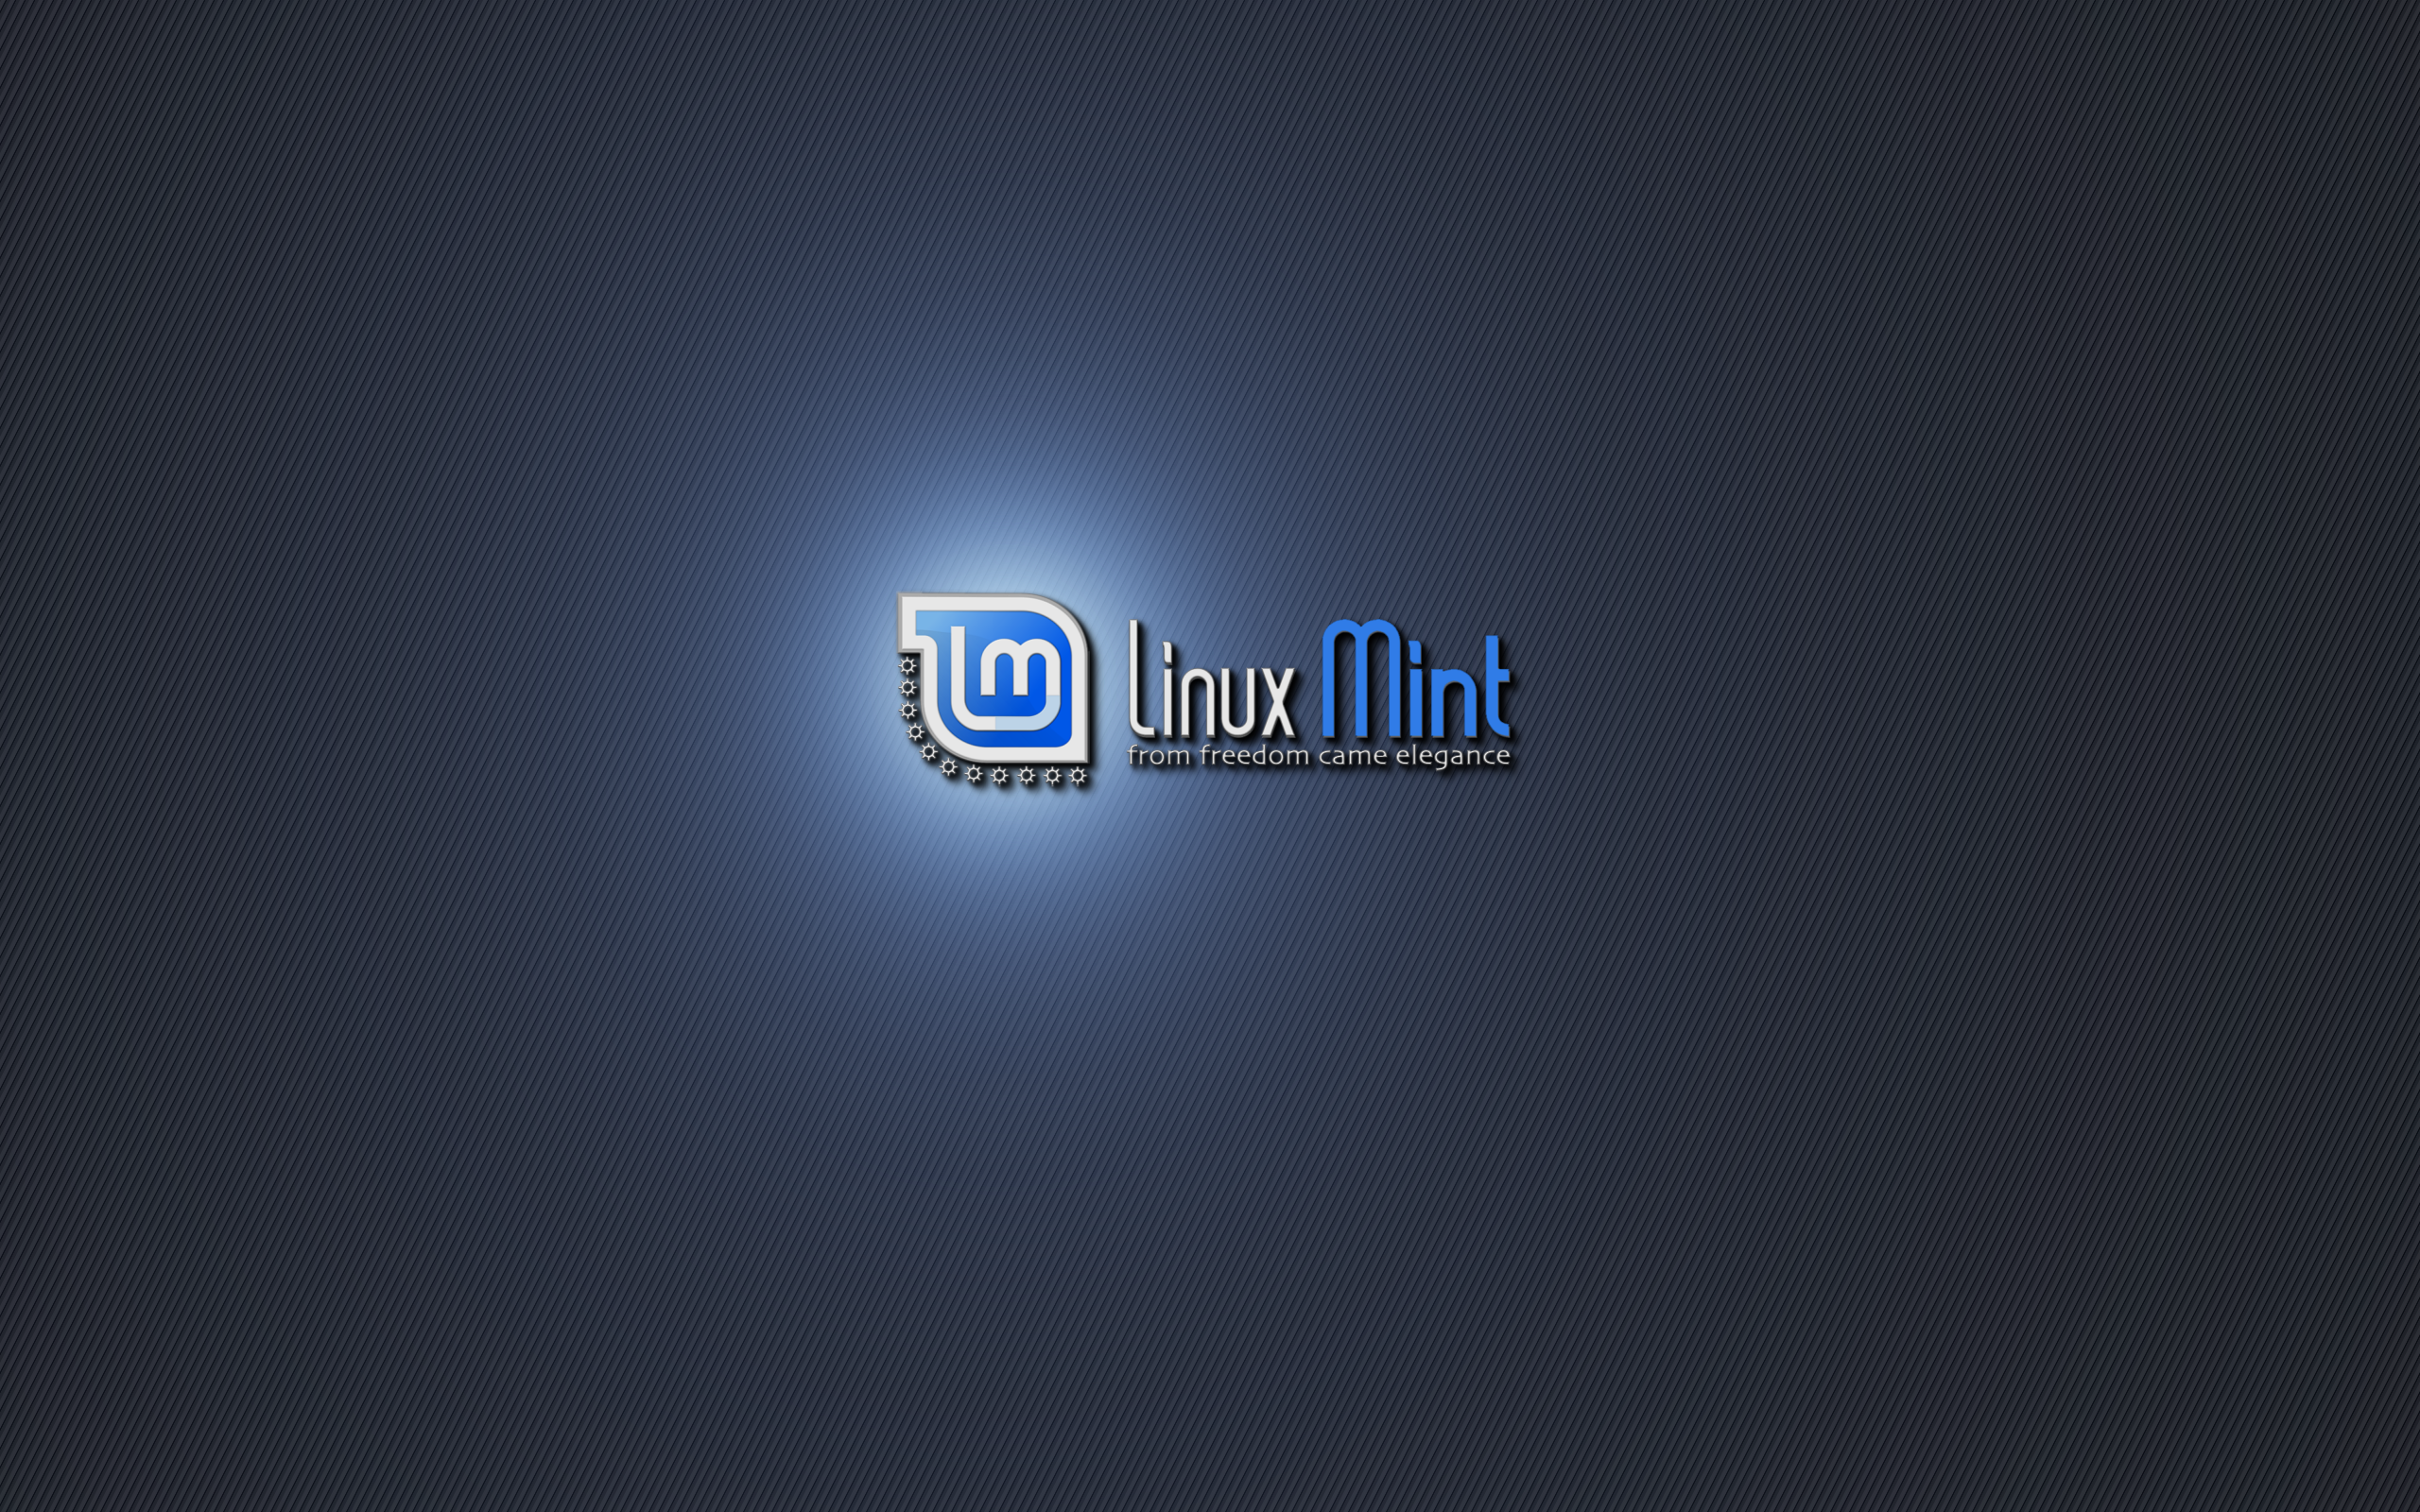 Linux Mint Wallpapers 4f7x4x5 Linux Mint 2560x1600 Wallpaper Teahub Io